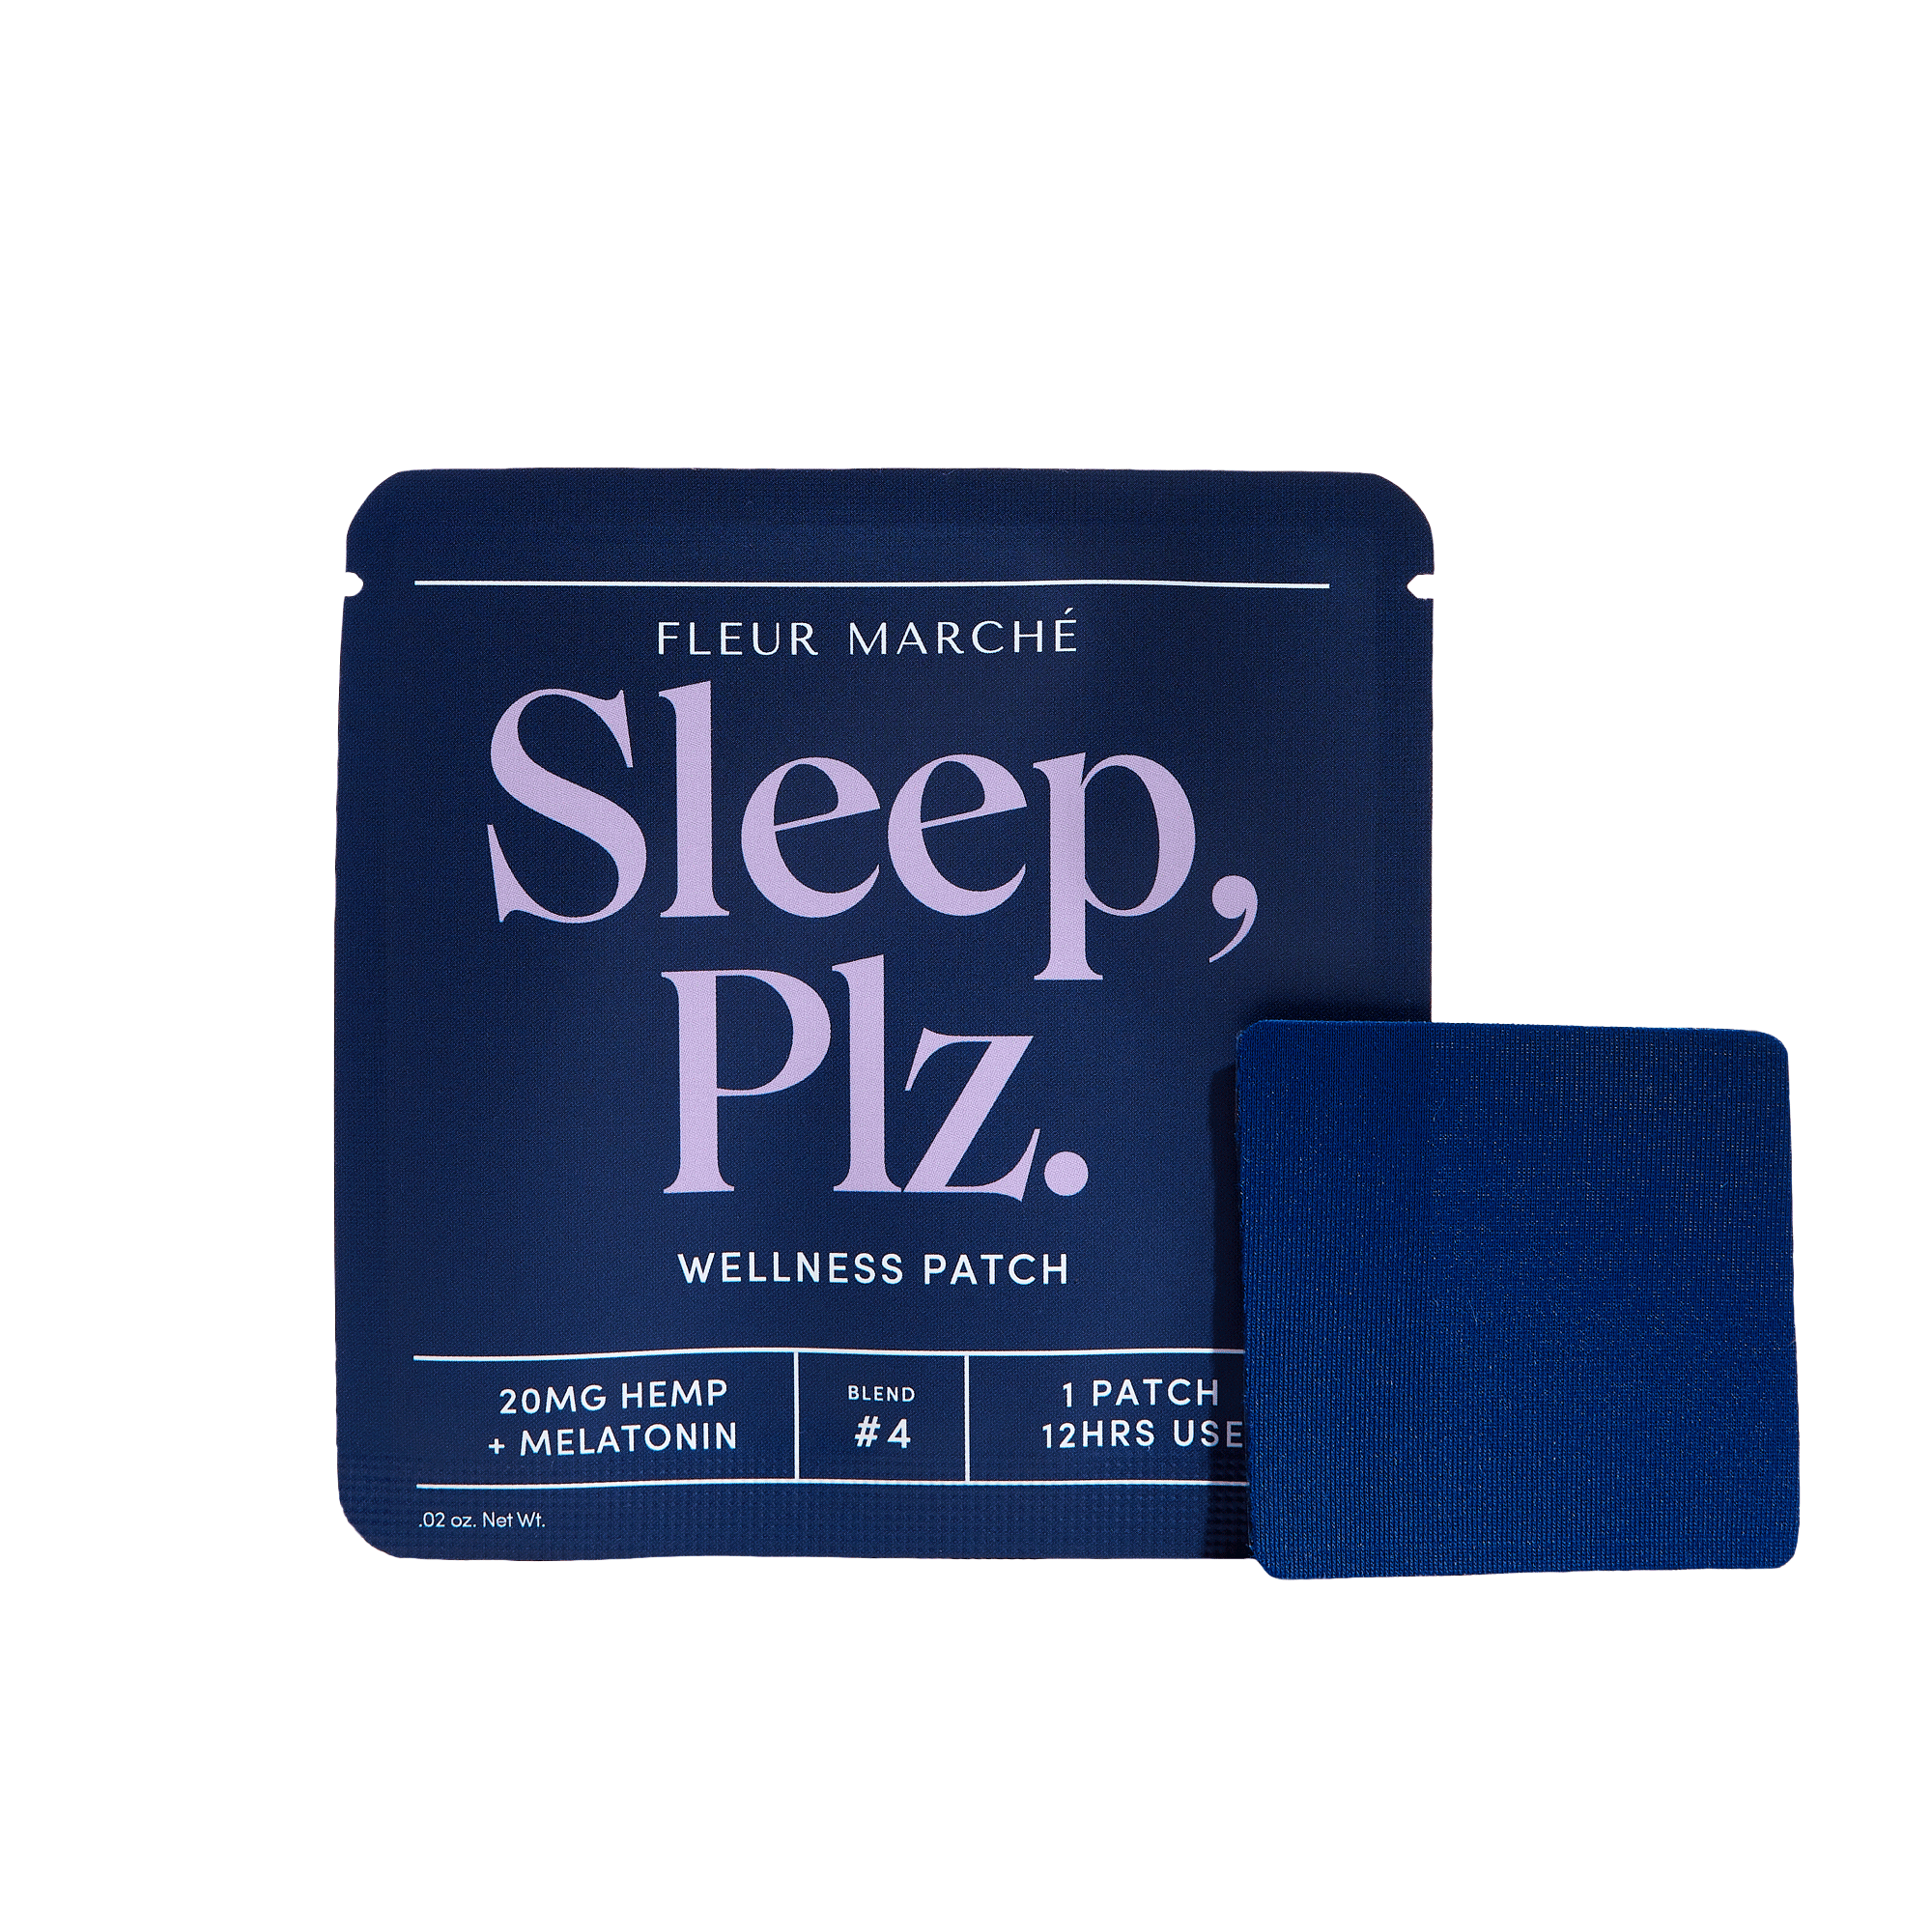 Wholesale Sleep, Plz.